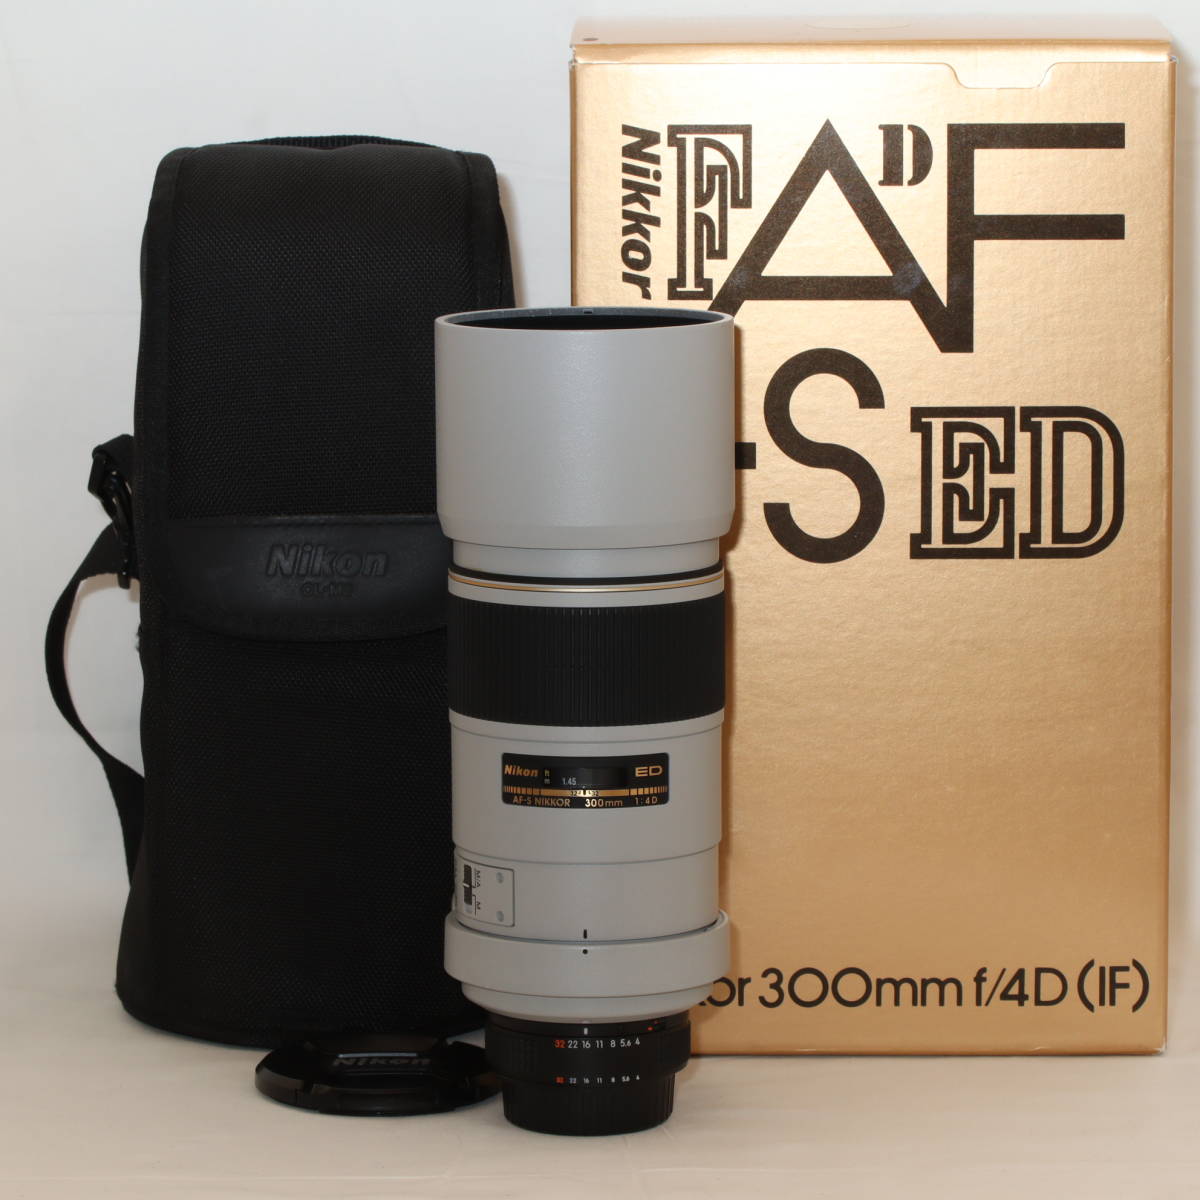 ヤフオク! -af-s ed 300mm f4d ライトグレー(家電、AV、カメラ)の中古 